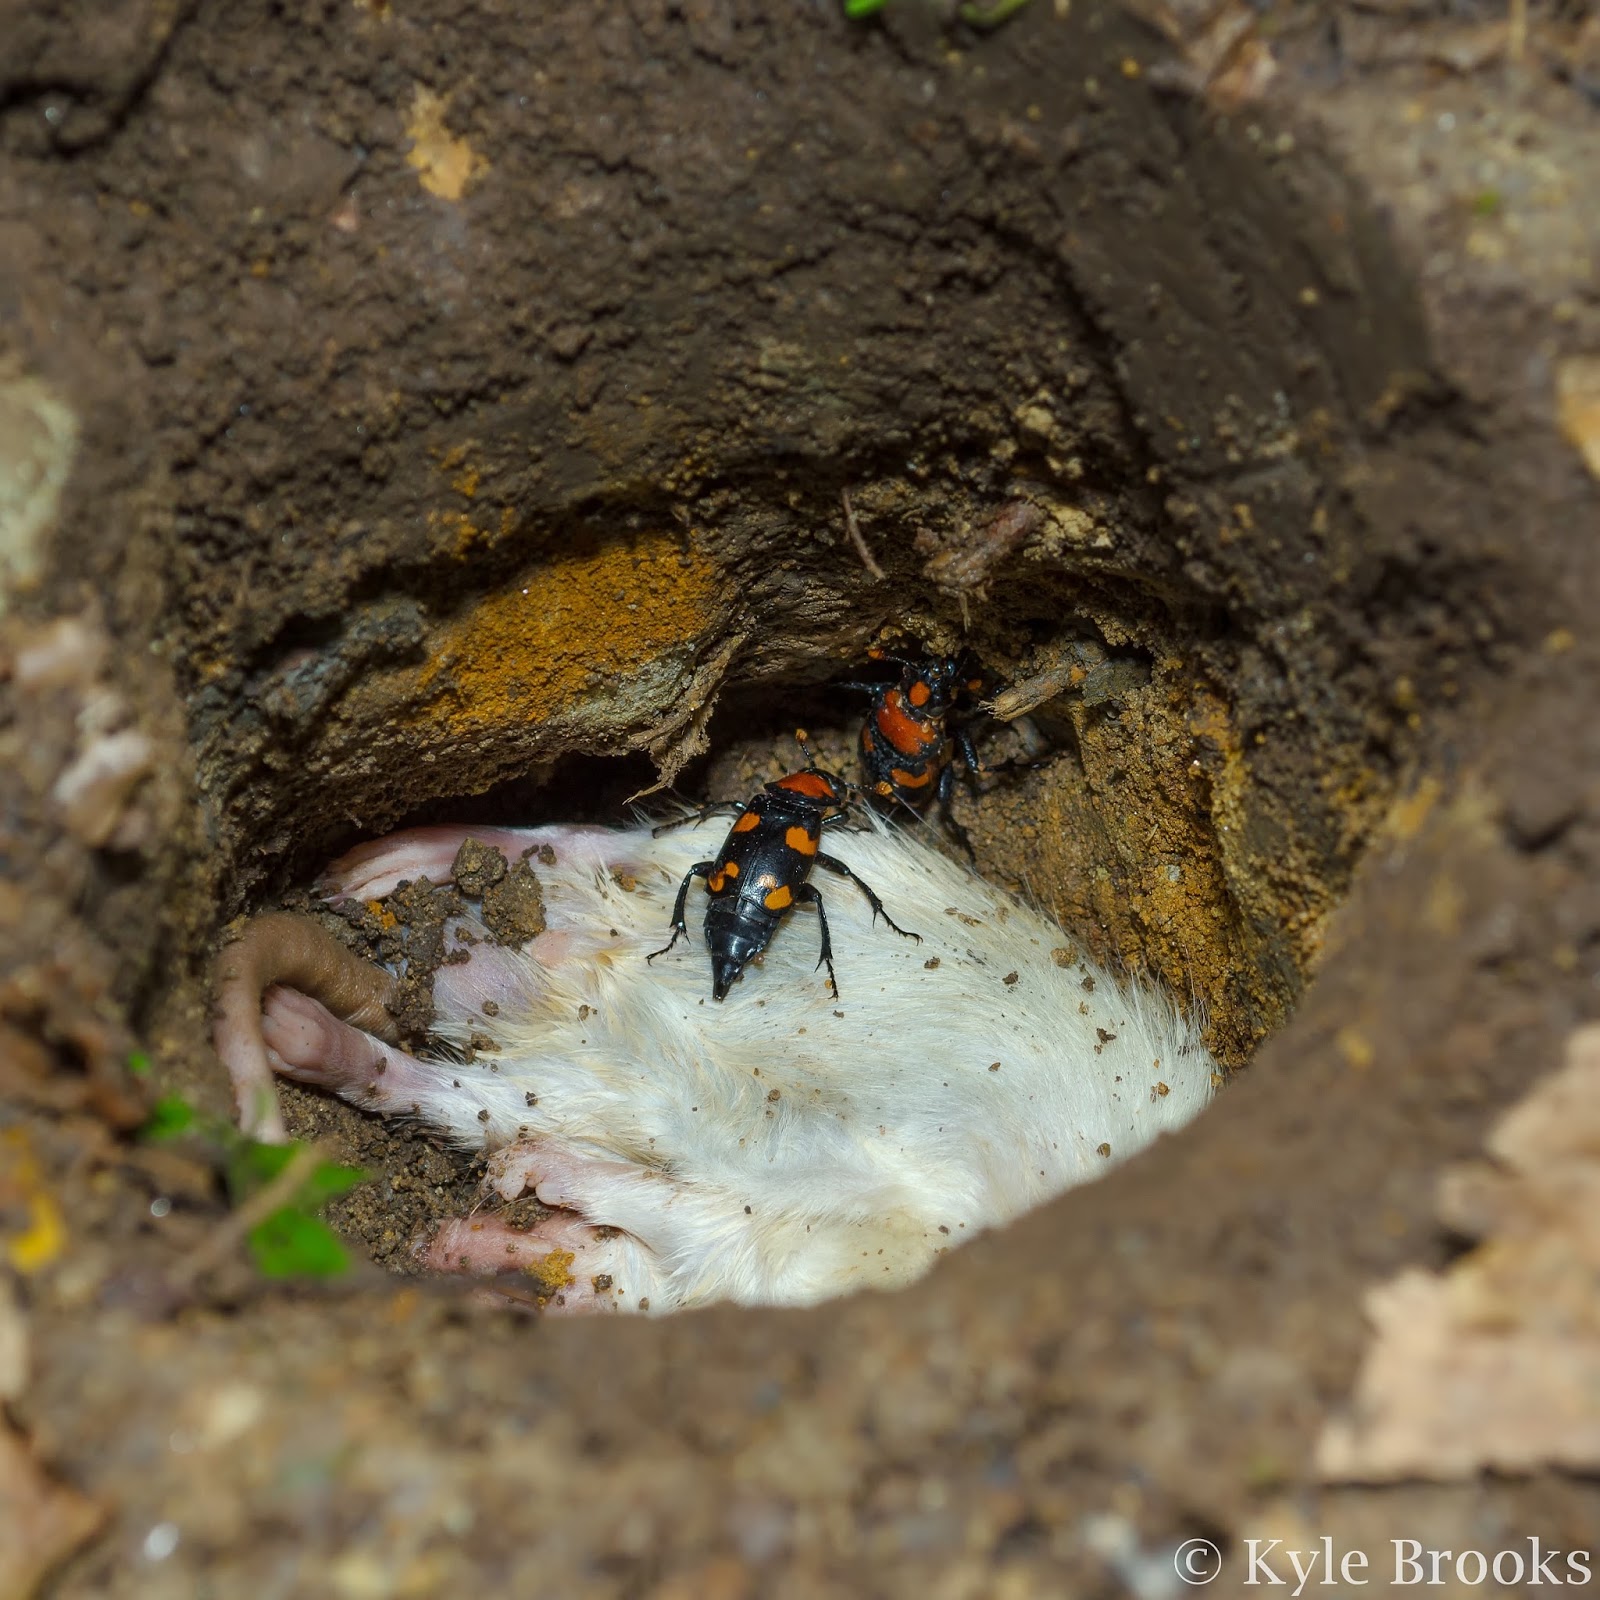 American Burying Beetle Reproduction